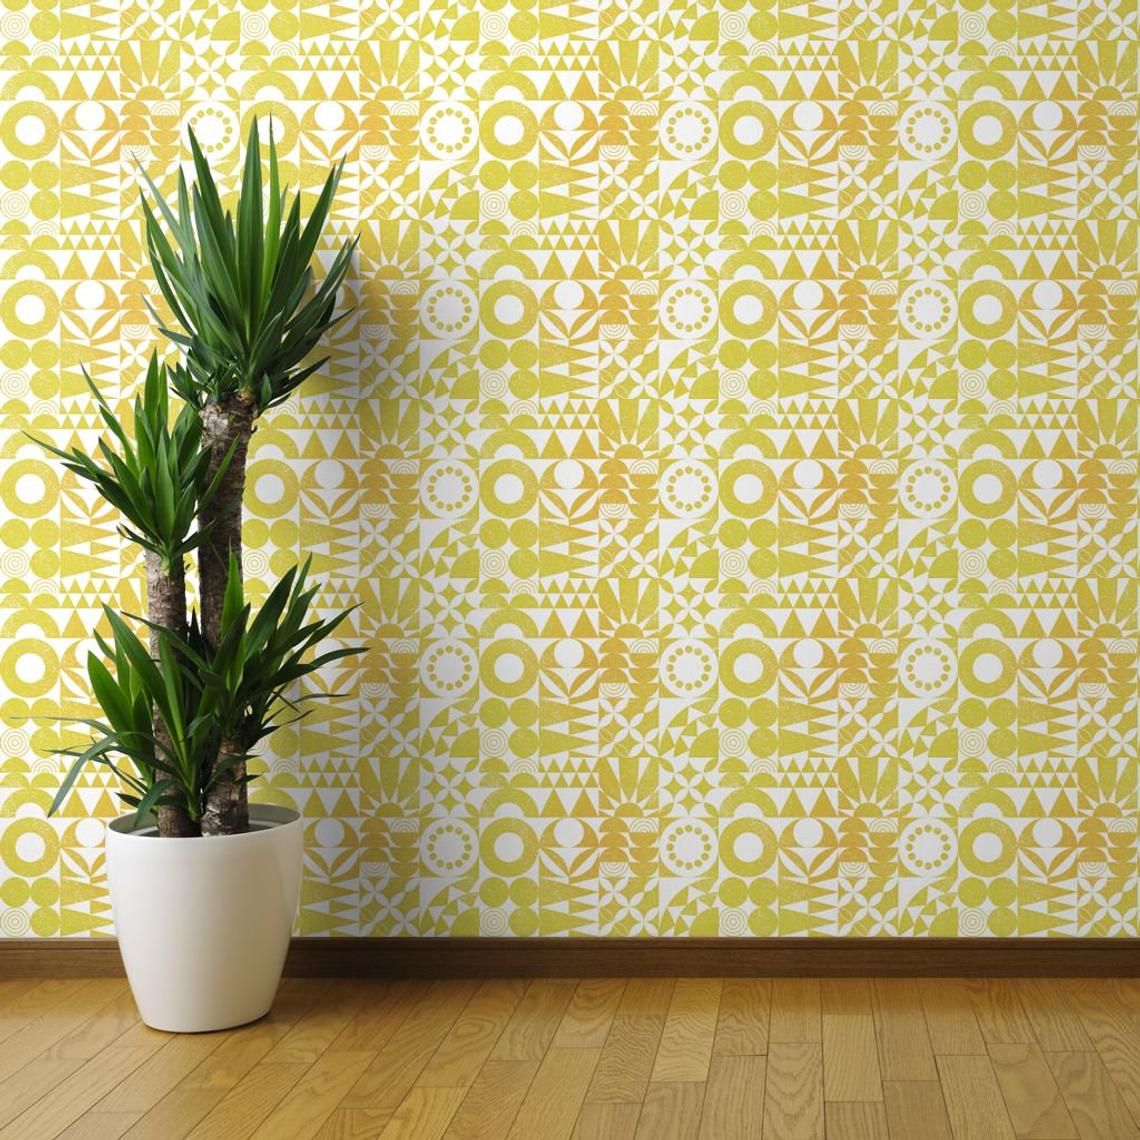 Yellow Mod Wallpaper Desert Sun By Analinea Modernism Retro